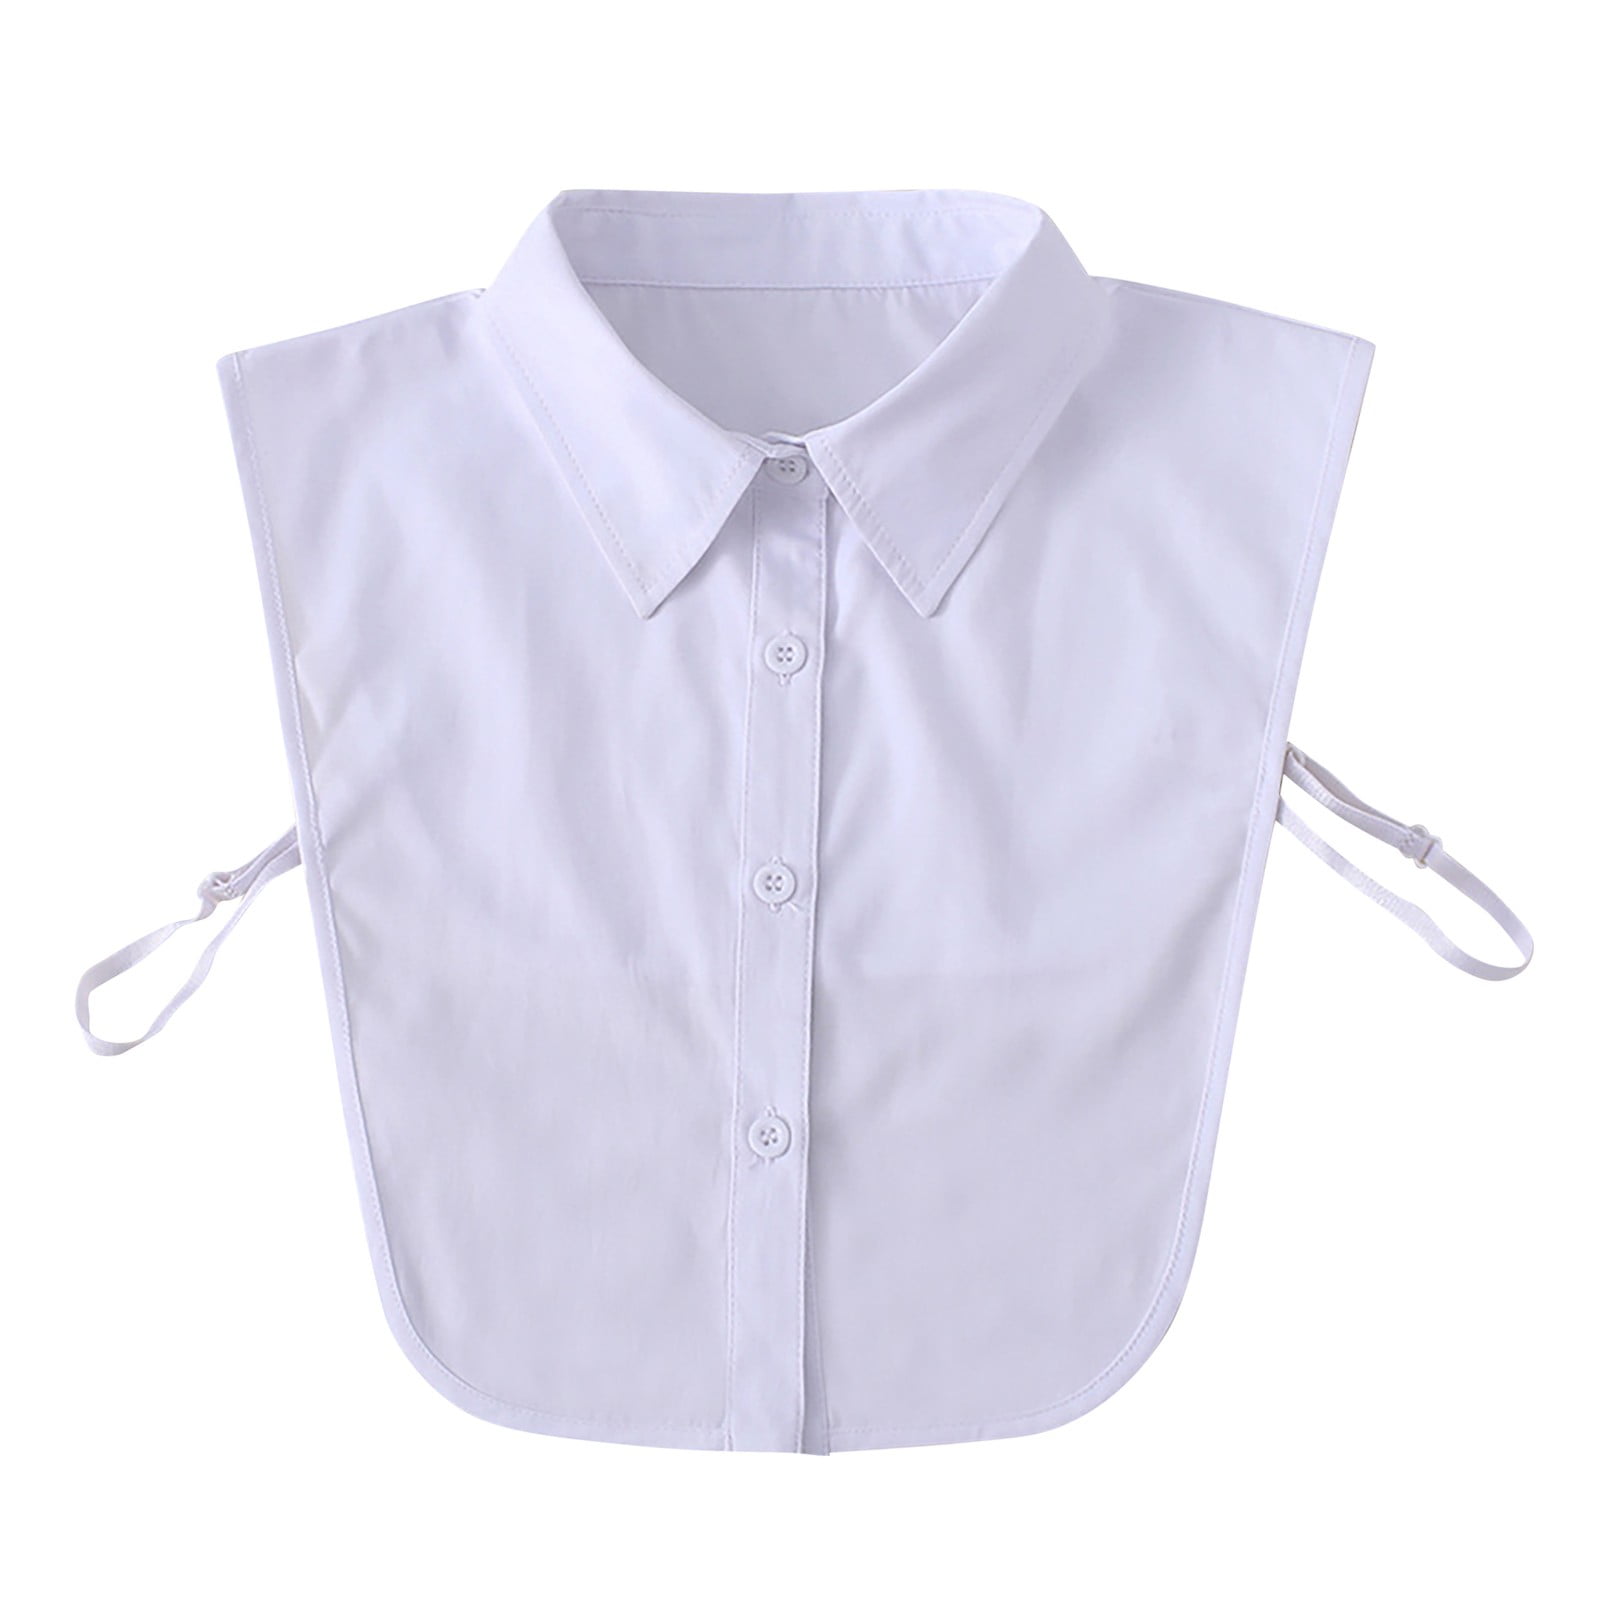 Womens Ladies Lace False Collar Fake Half Shirt Blouse Detachable L6C0 